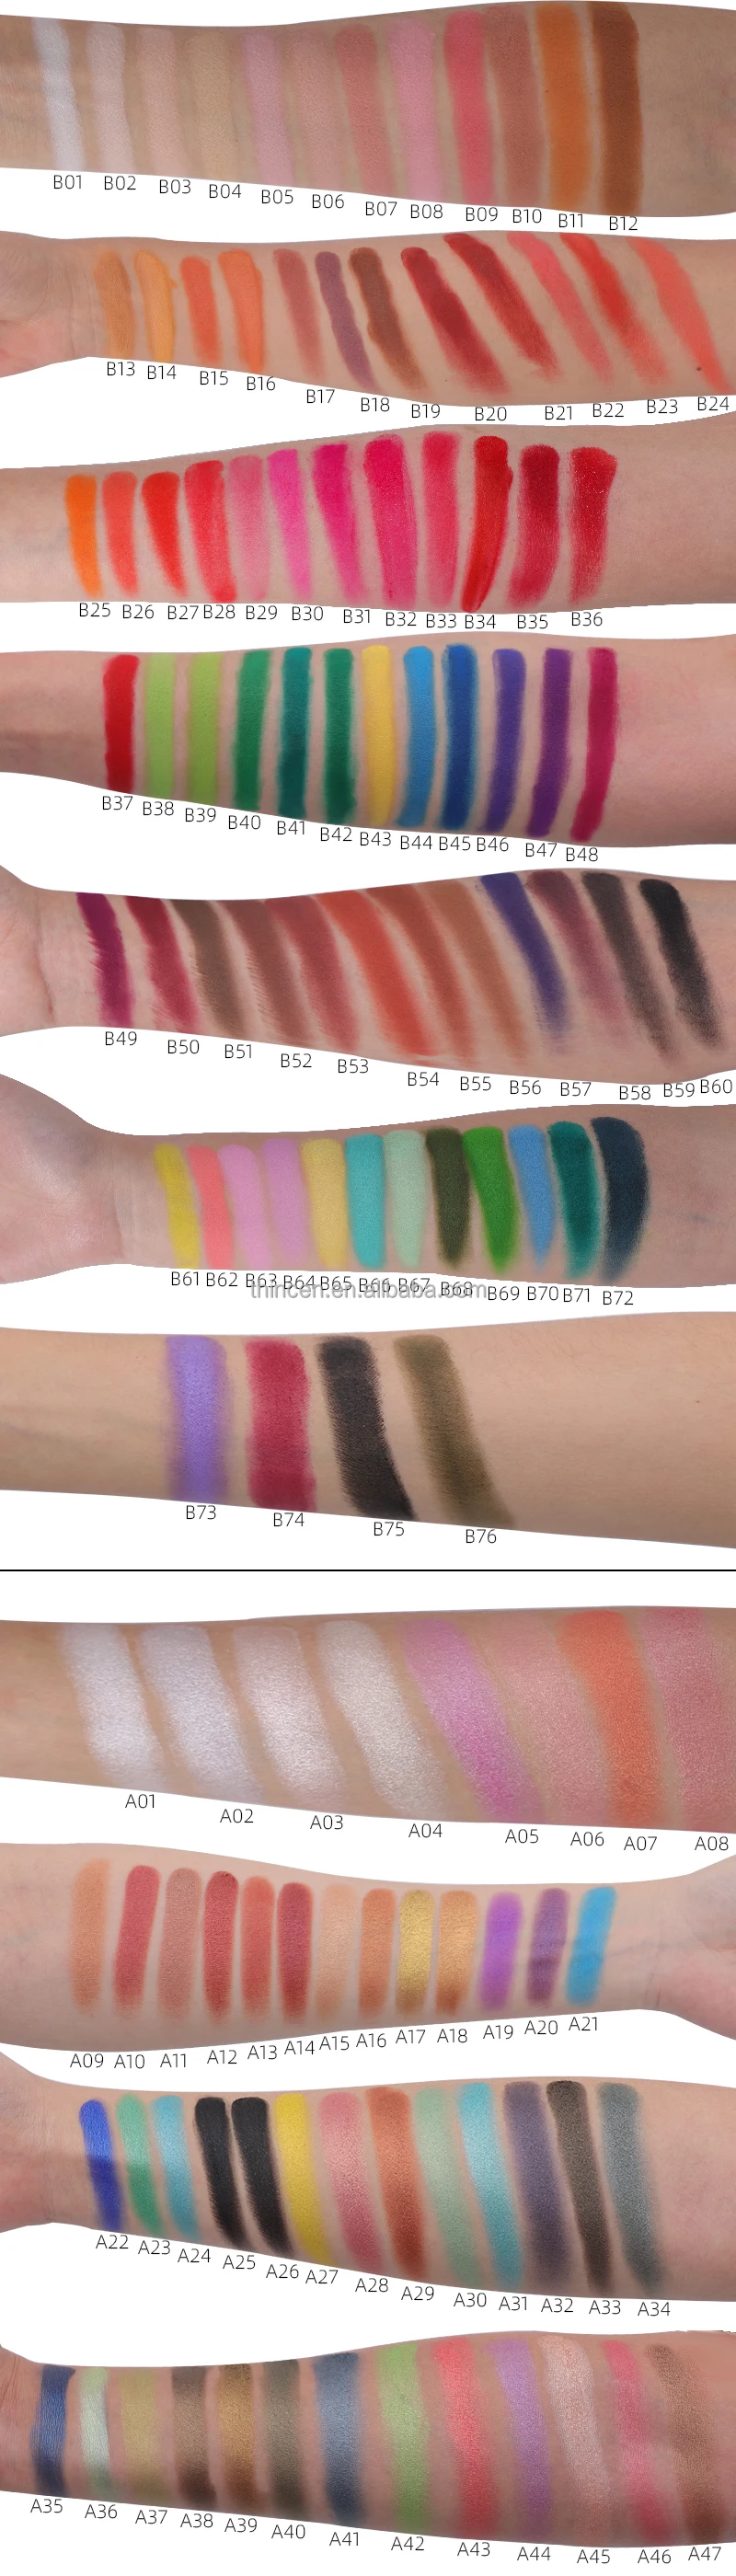 Hot sale 9 Color Eye Shadow Super Pigmented Eyeshadow Palette Private Label Custom DIY Eyeshadow palette